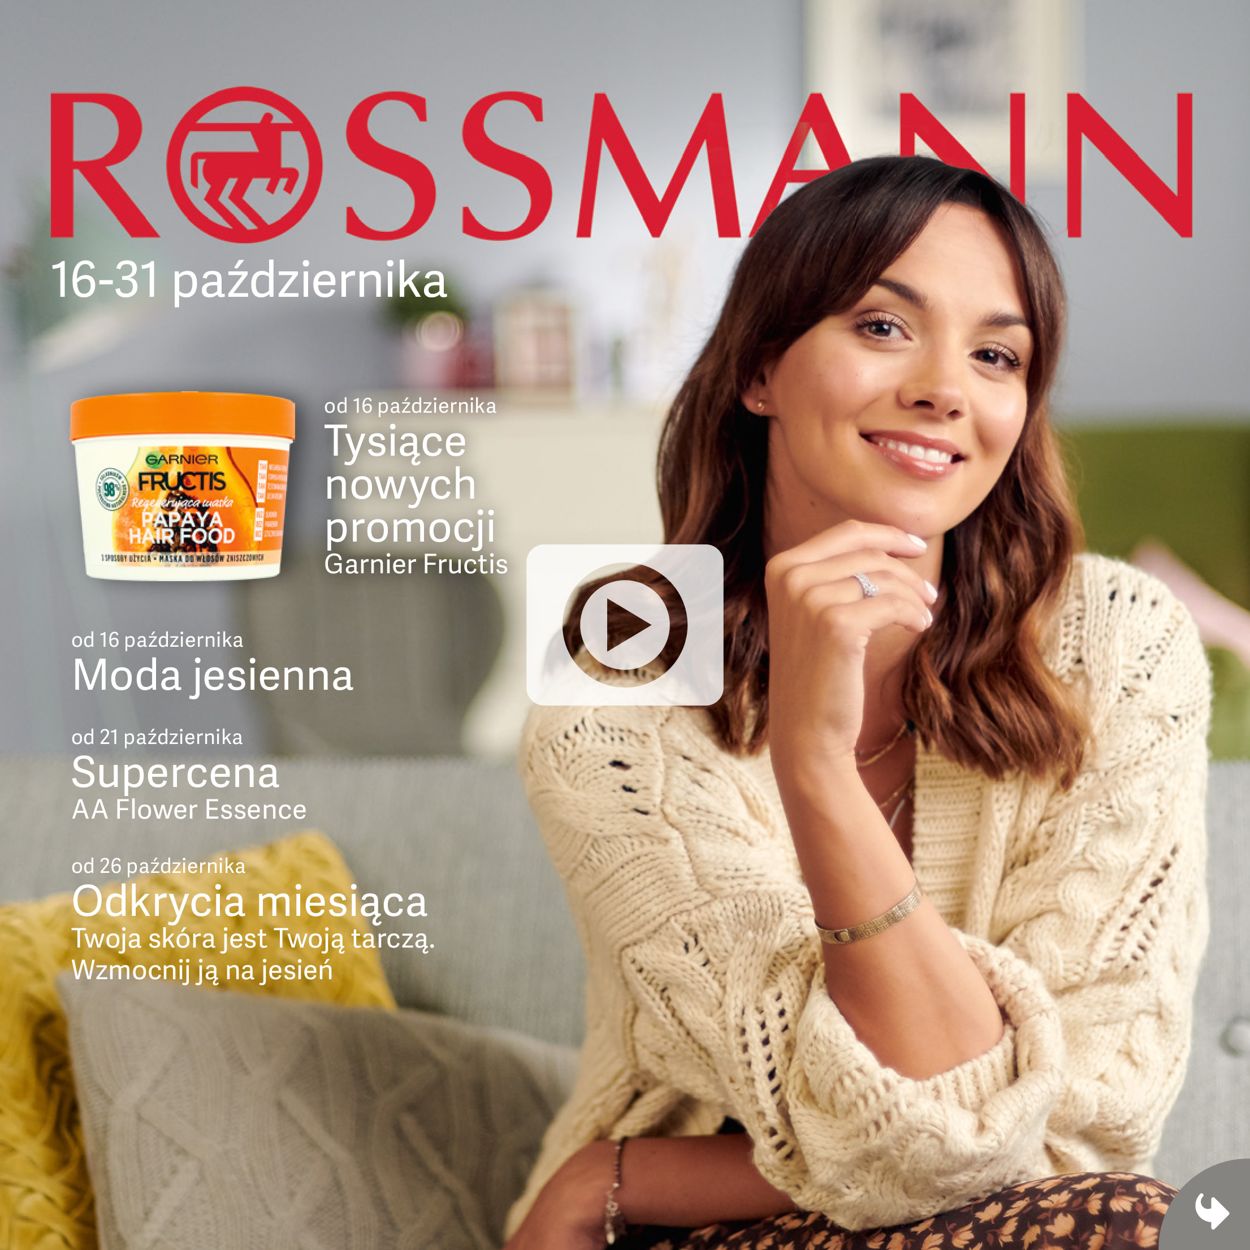 Rossmann Gazetka od 16.10.2019